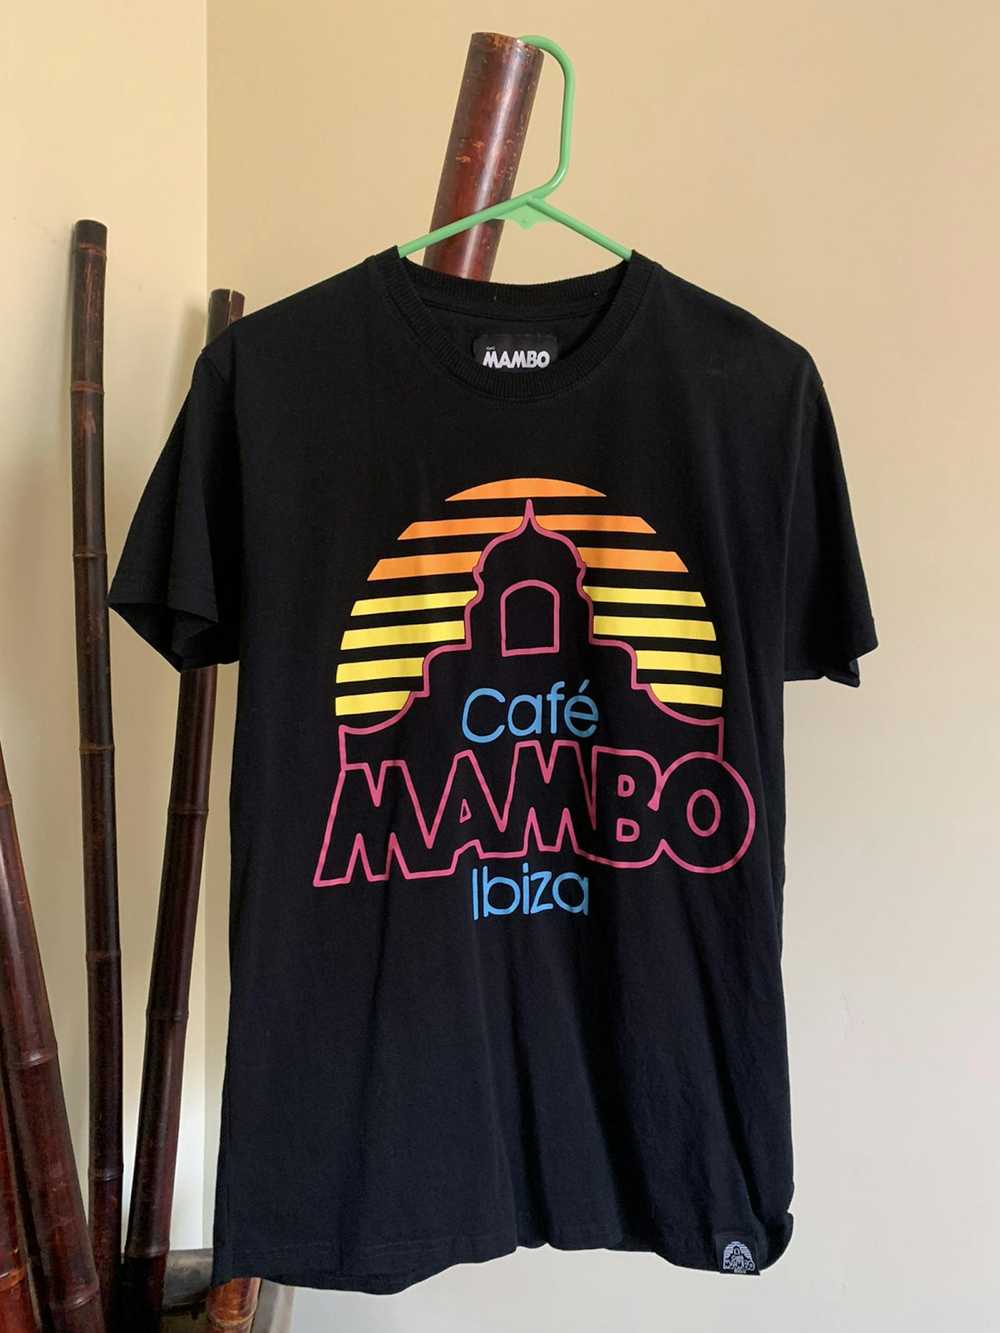 Mambo MAMBO Ibiza T Shirt - image 1